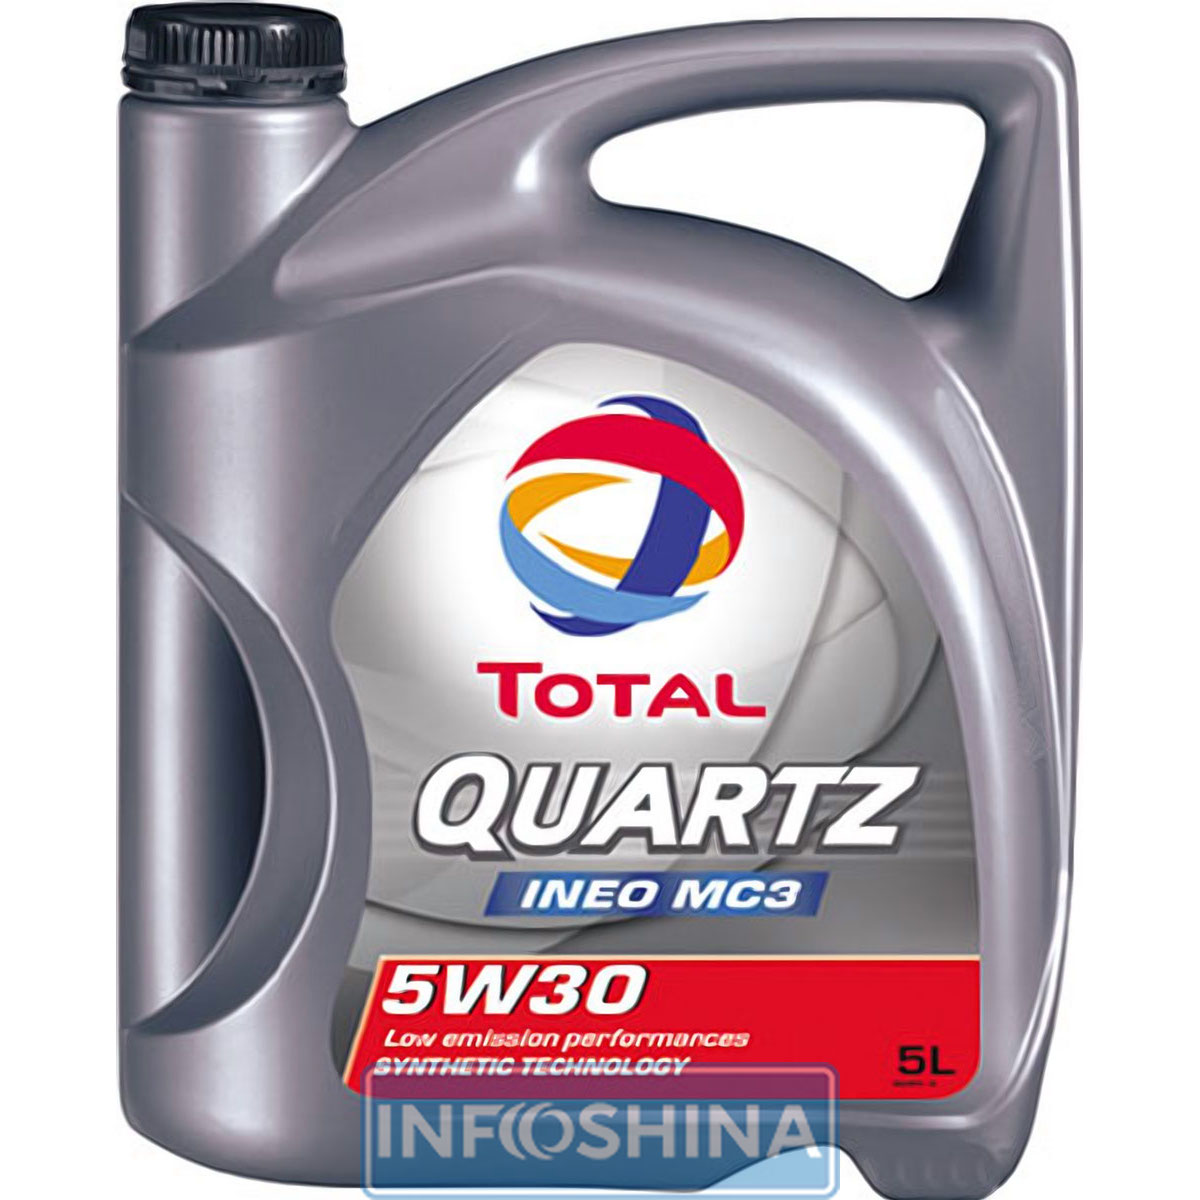 Total Quartz INEO MC3 5W-30